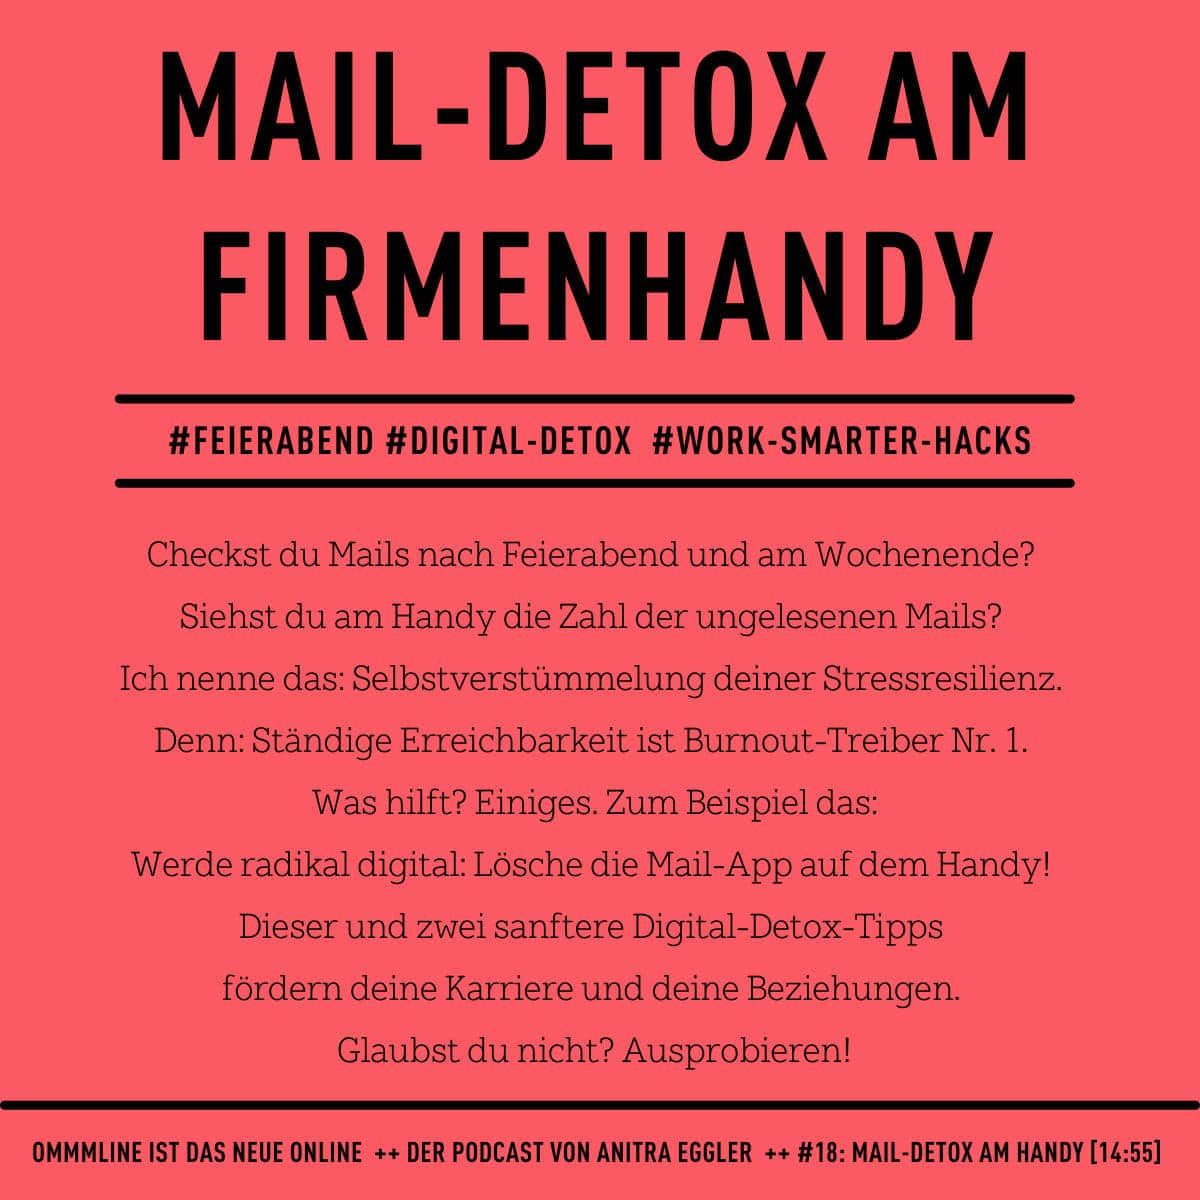 Digital-Detox-Tipp: Mail-Detox am Firmenhandy